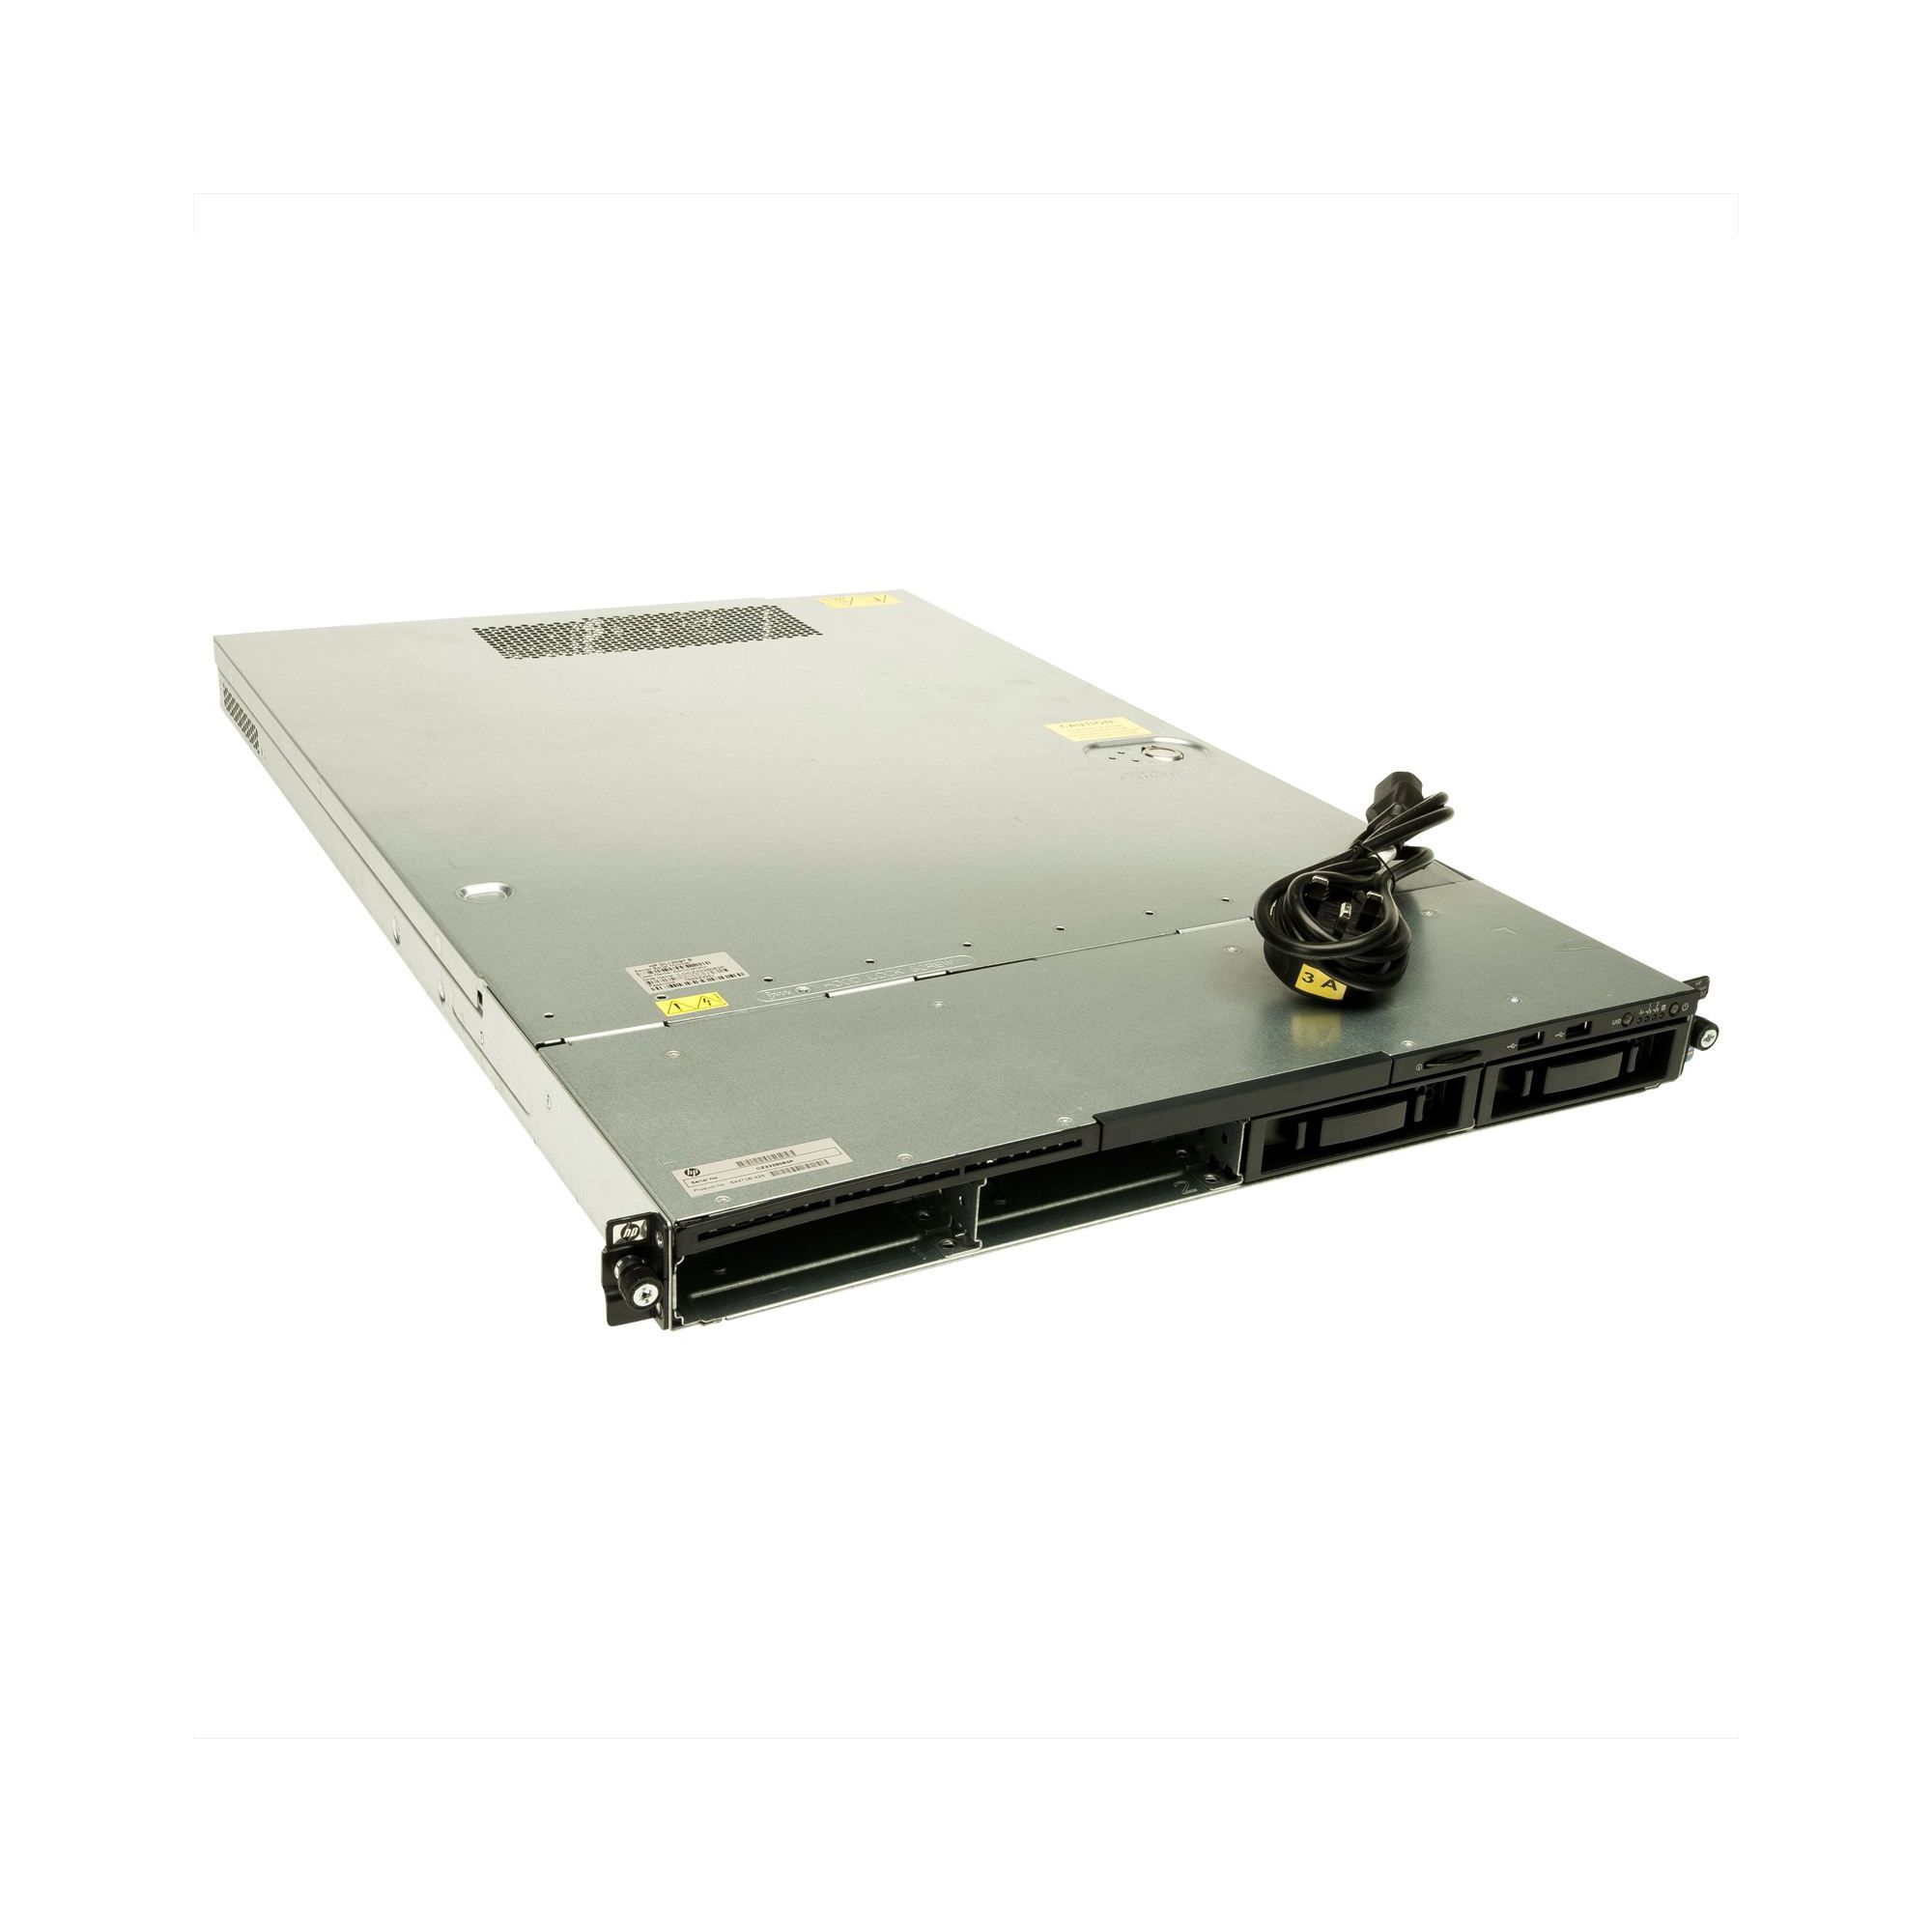 Hewlett-Packard 644706-425 ProLiant DL120 G7 Rack Server